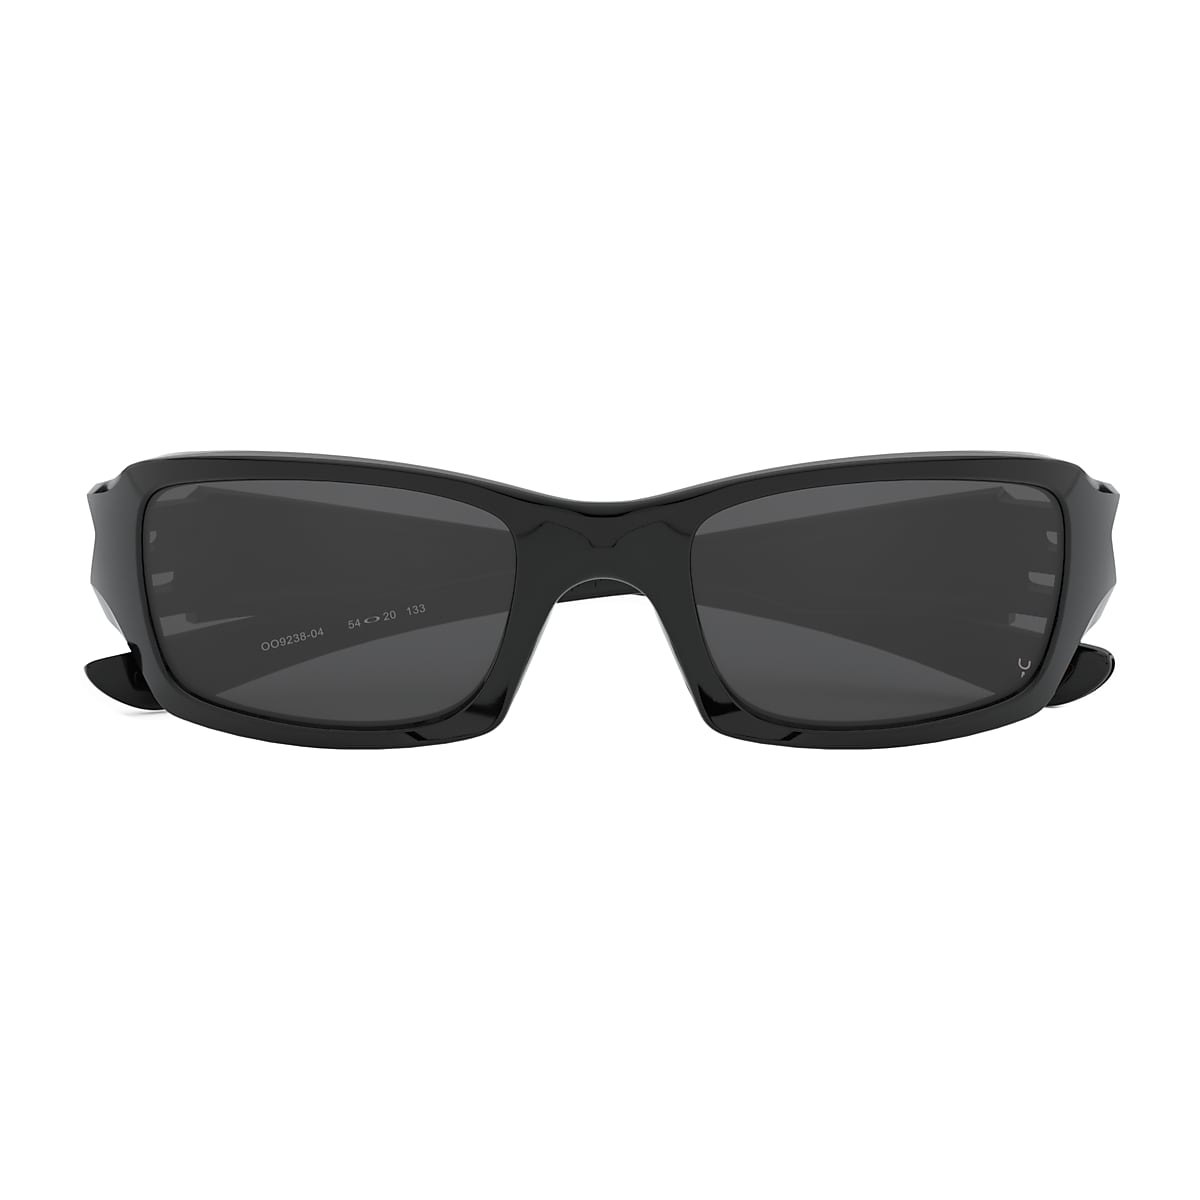 Fives Squared® Grey Lenses, Polished Black Frame Sunglasses | Oakley® US